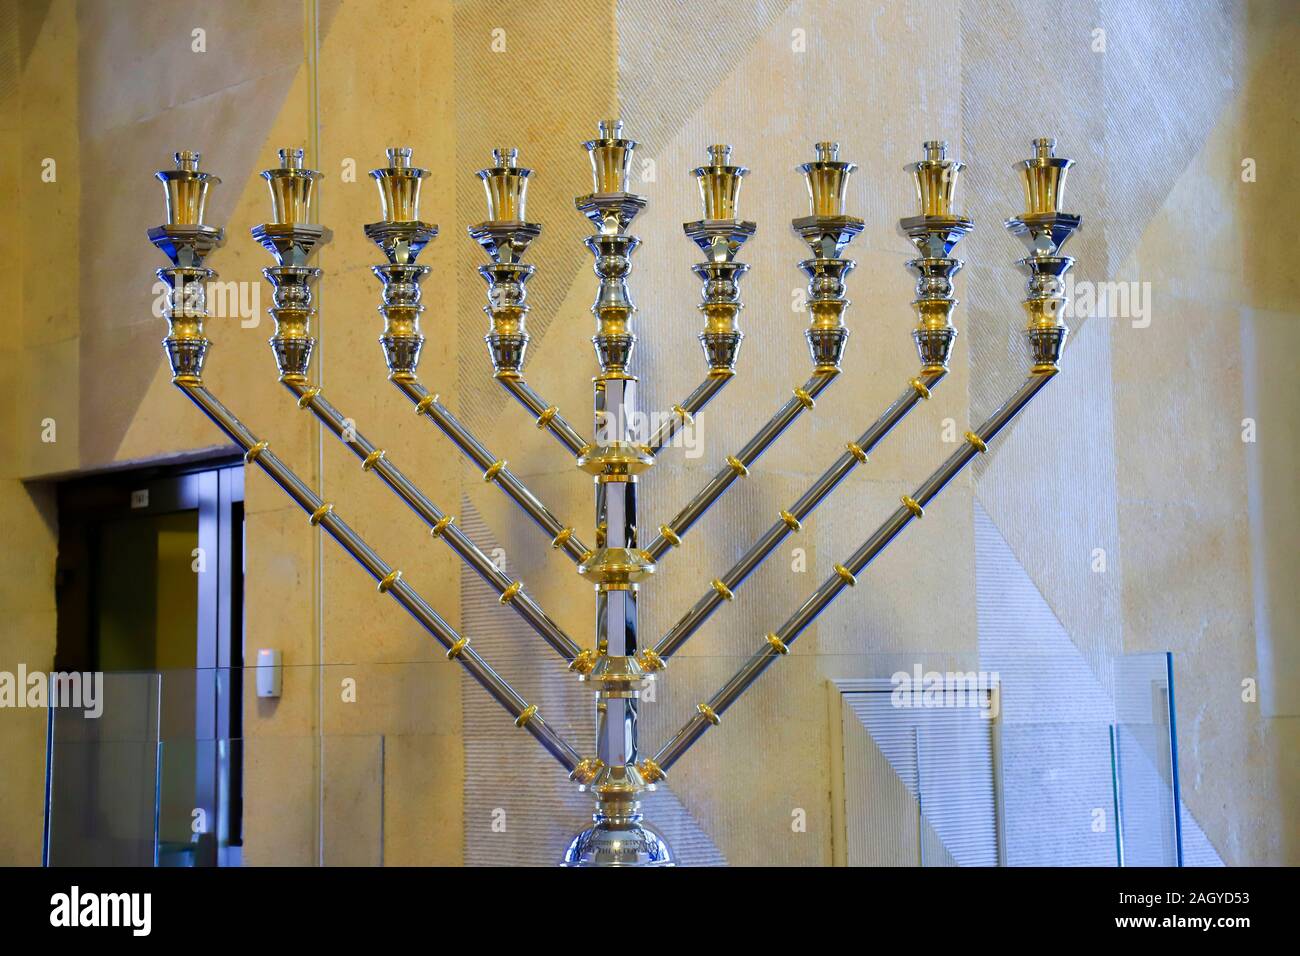 Il più grande argento Hanukkah, uno splendido candelabro per 9 candele sorge nella International Jewish culturale centro religioso Menorah Foto Stock